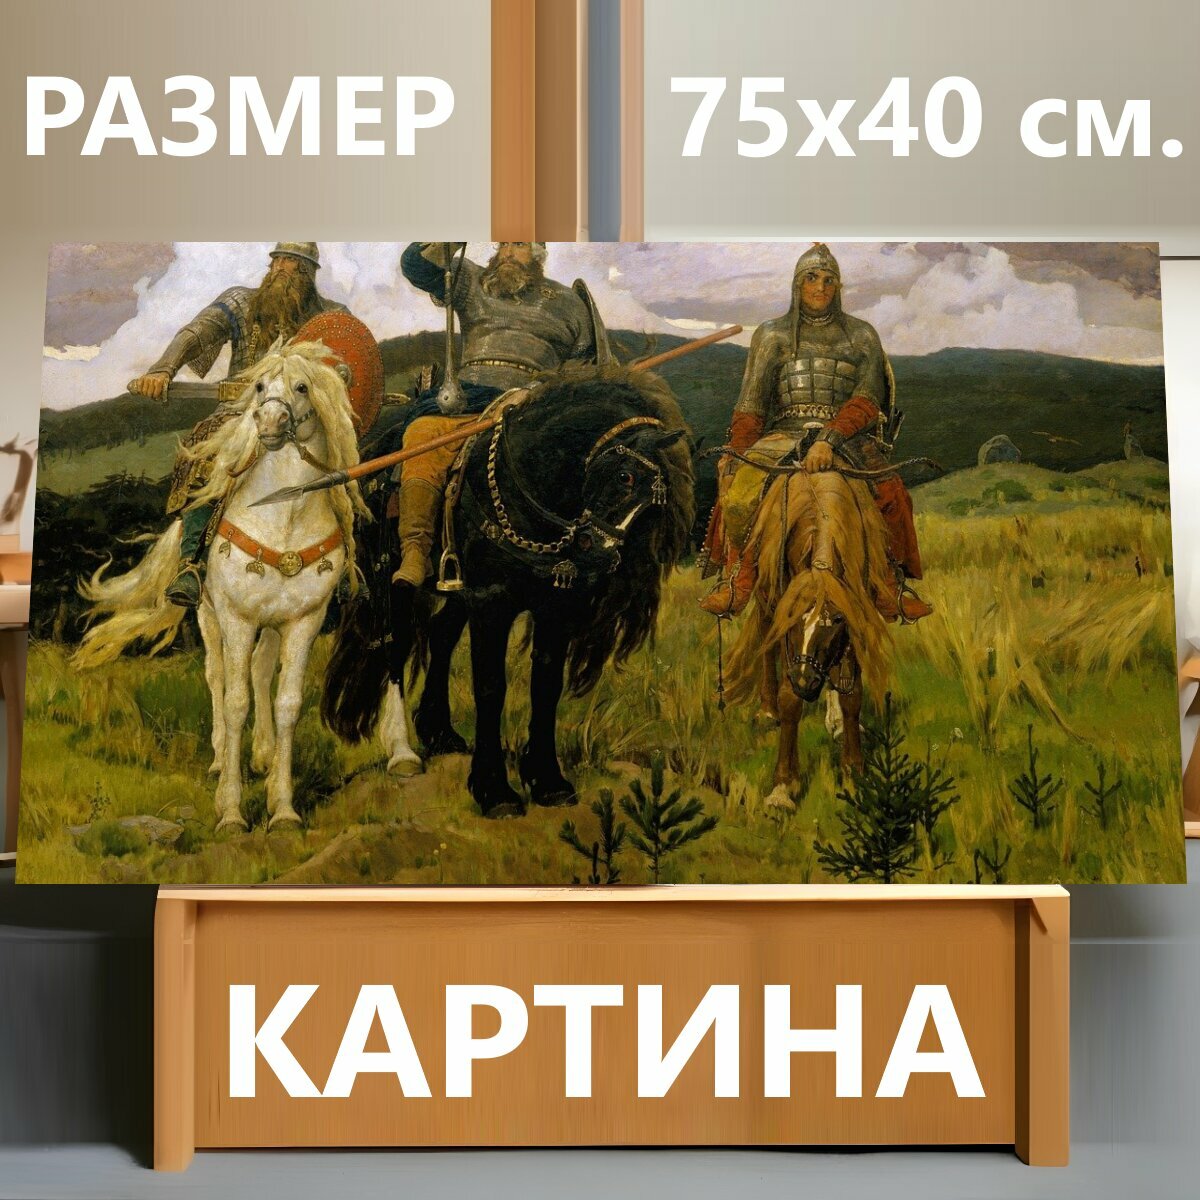 Картина на холсте "Живопись, васнецов виктор михайлович, богатыри" на подрамнике 75х40 см. для интерьера